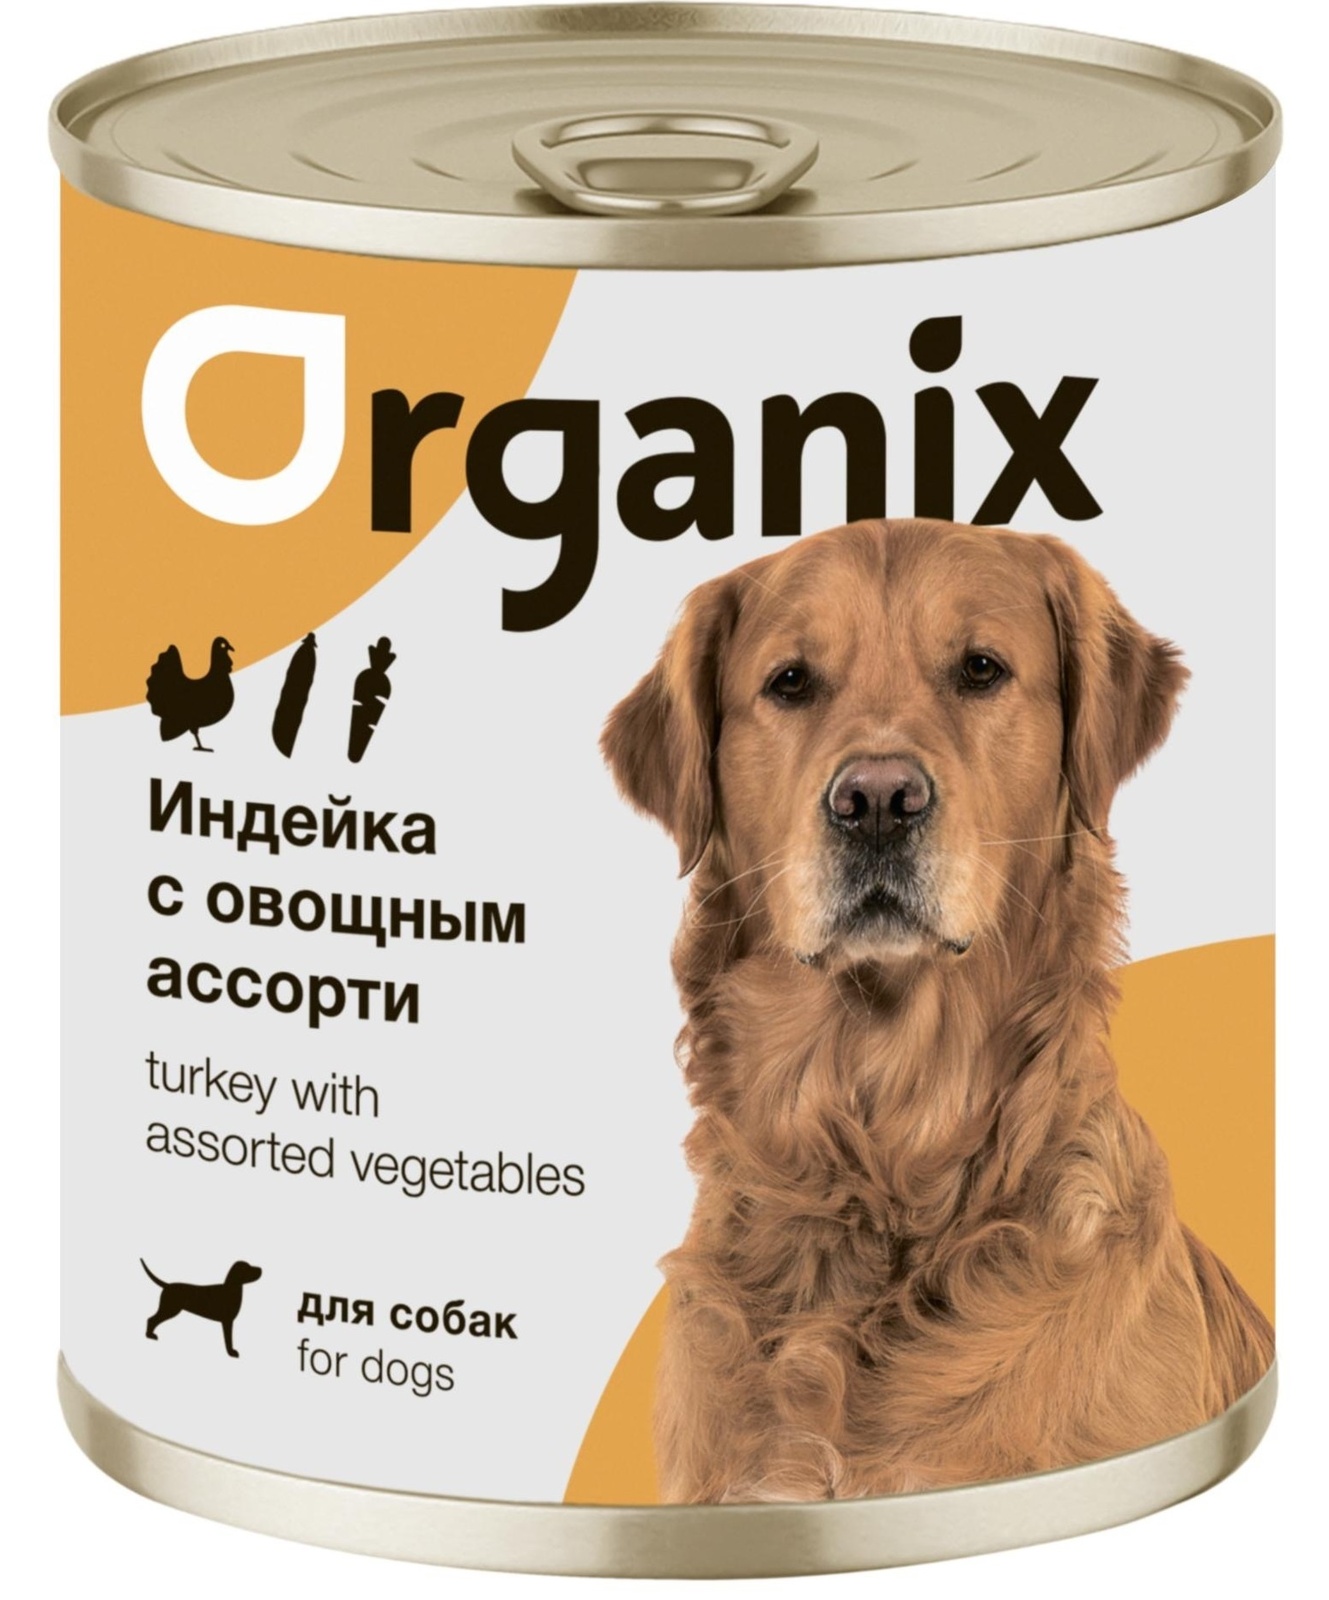 Organix консервы Organix консервы для собак Индейка с овощным ассорти (750 г) organix консервы organix консервы для собак ягненок с рубцом и морковью 750 г